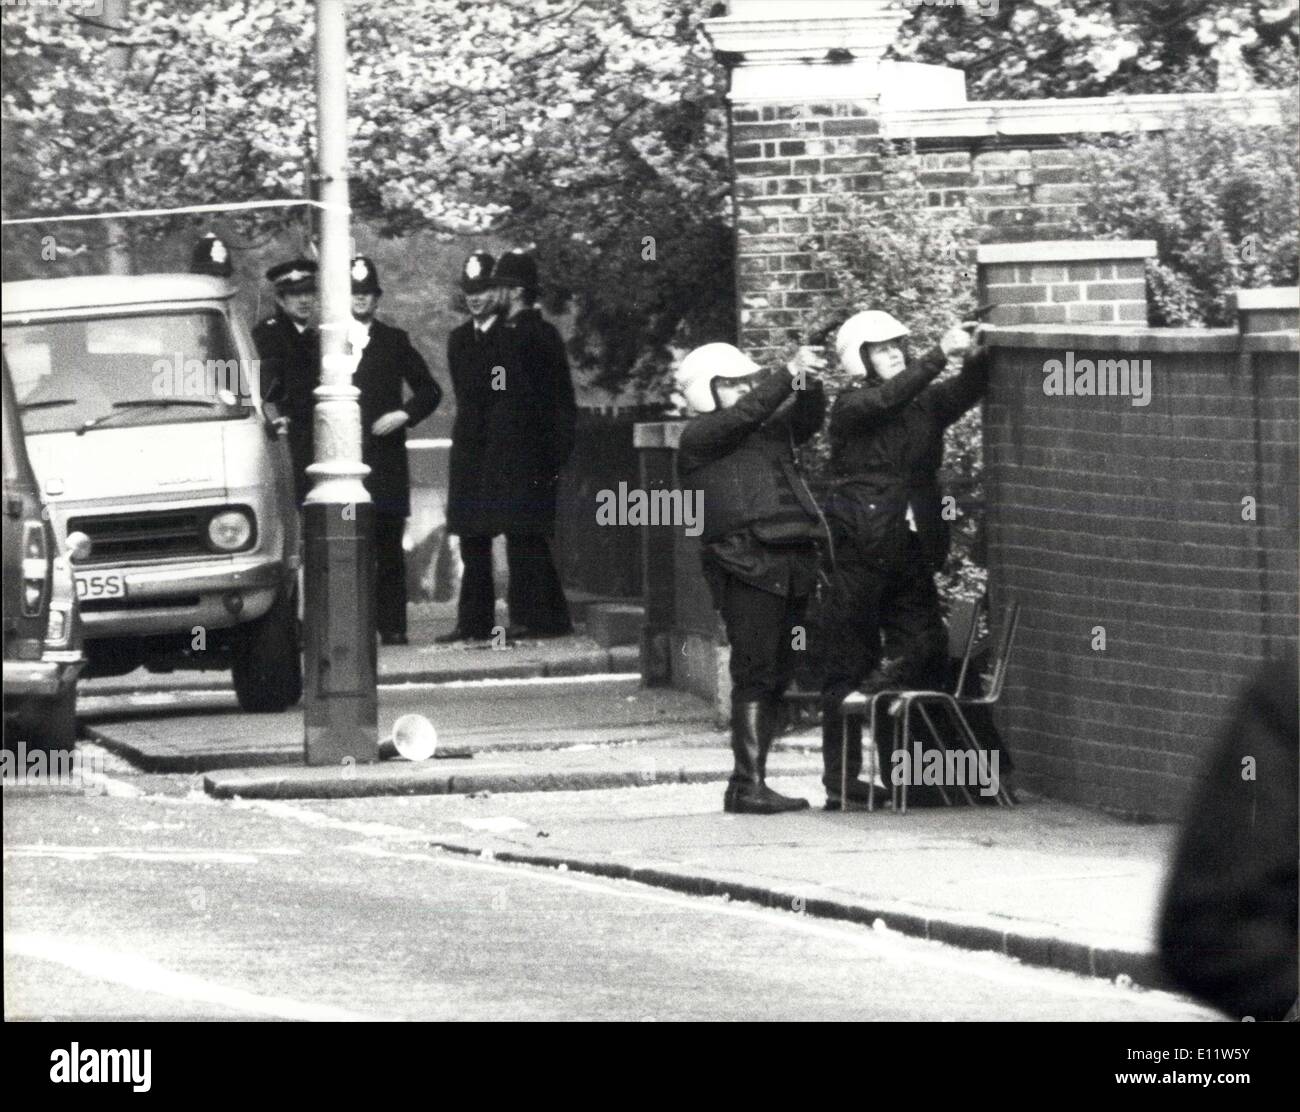 Apr. 30, 1980 - i cittadini iraniani assumere ambasciata iraniana a Londra: armati Iran cittadini ha assunto l'ambasciata iraniana a Londra oggi. Essi hanno preso il poliziotto in ostaggio - un conestabile armati con Scotland Yard diplomatica del gruppo di protezione che era di guardia al di fuori dell'Ambasciata e una ventina di membri del personale d'ambasciata. Gli scatti sono stati ascoltati dall'interno dell'edificio che ora è circondato da una trentina di poliziotti armati. Mostra fotografica di polizia armata markmen prendano di mira al di fuori dell'ambasciata iraniana a Londra oggi Kninghtsbridge. Foto Stock